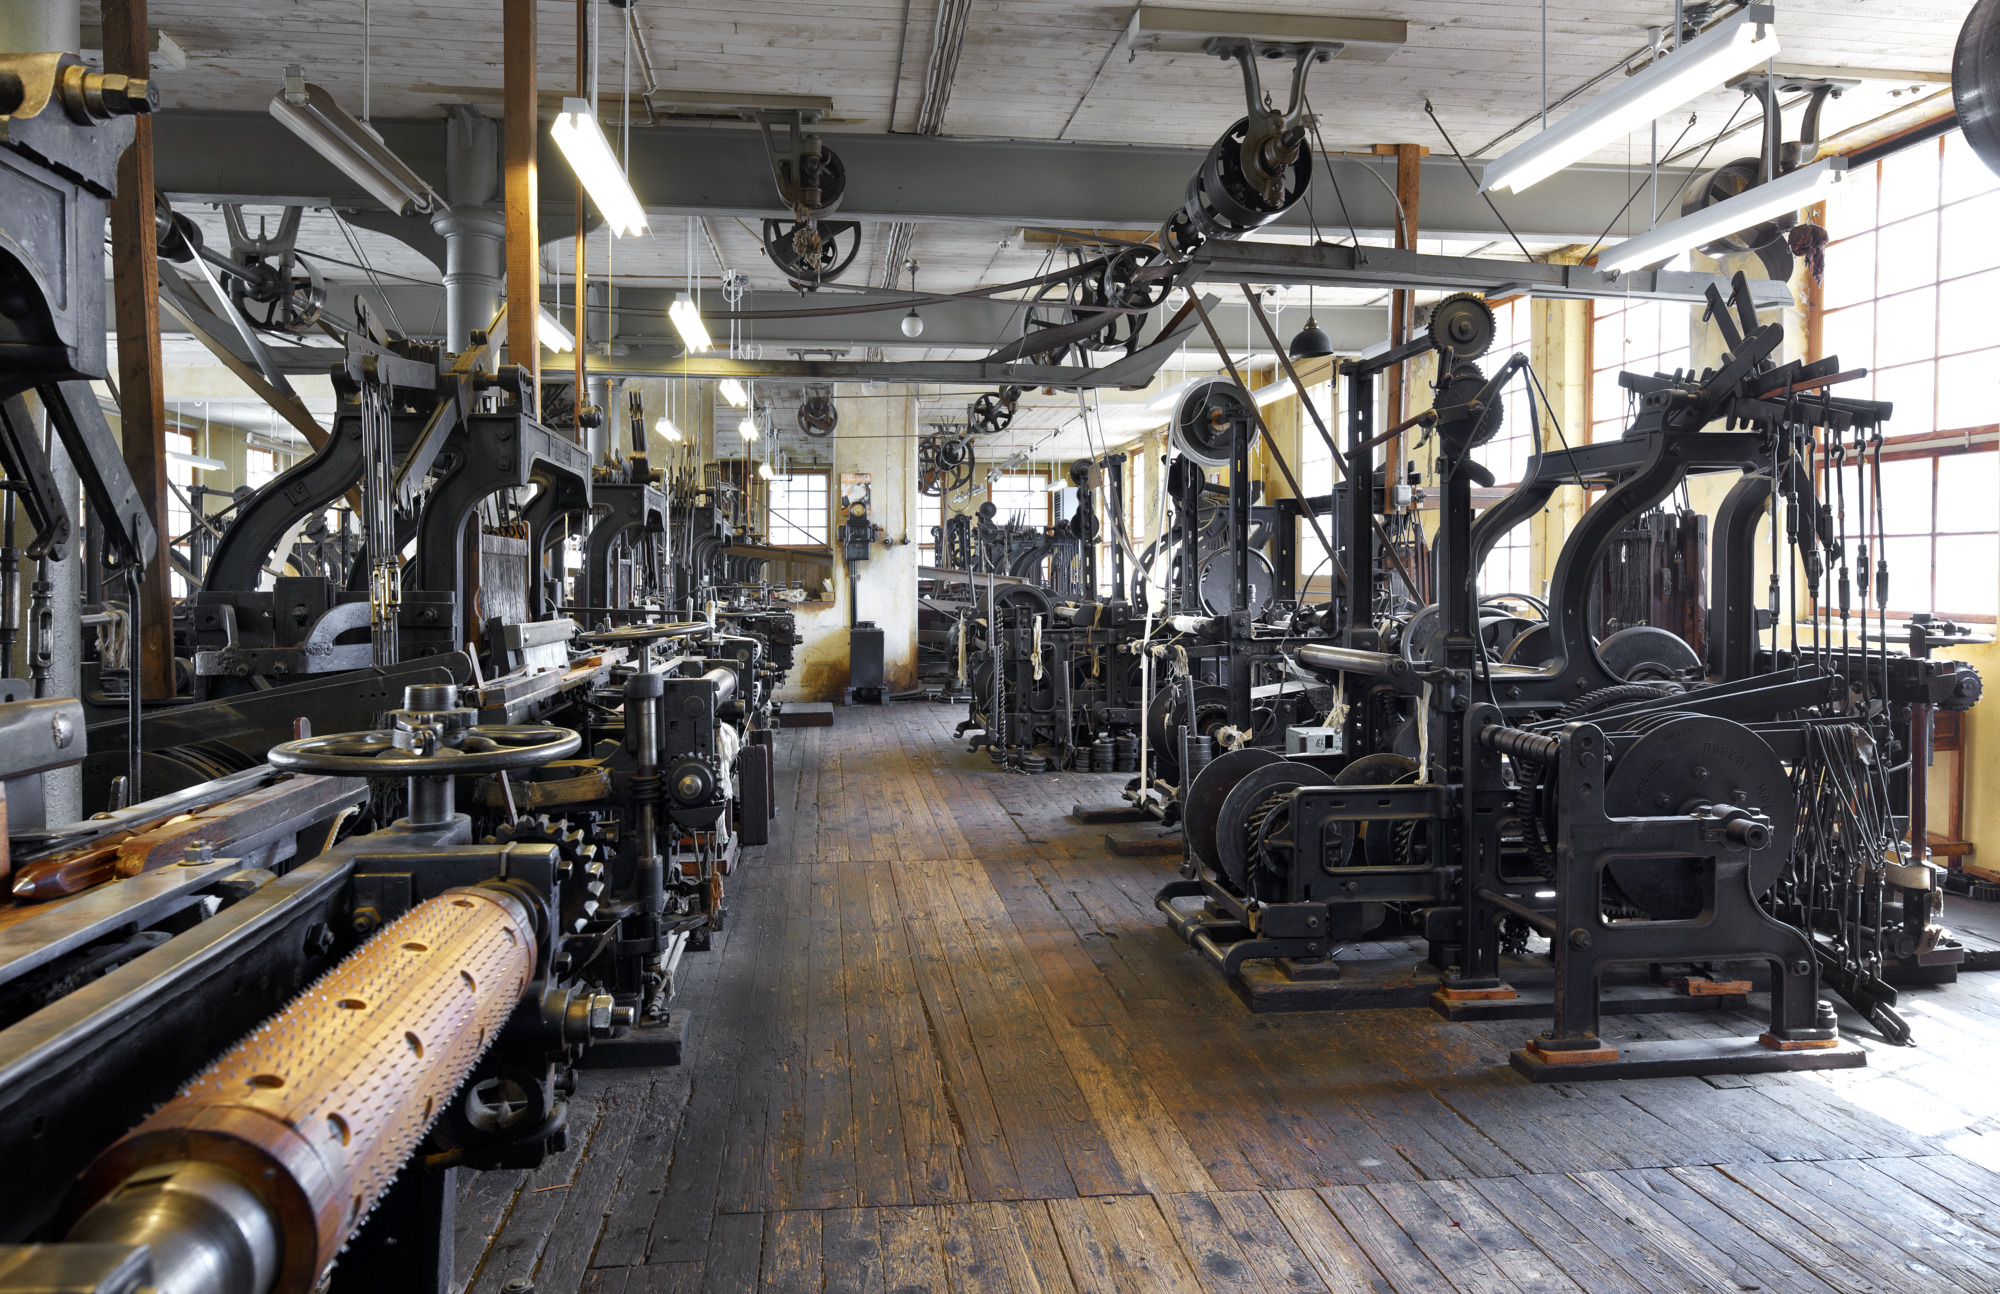 Interiörbild från Remfabriken som visar ett antal äldre maskiner